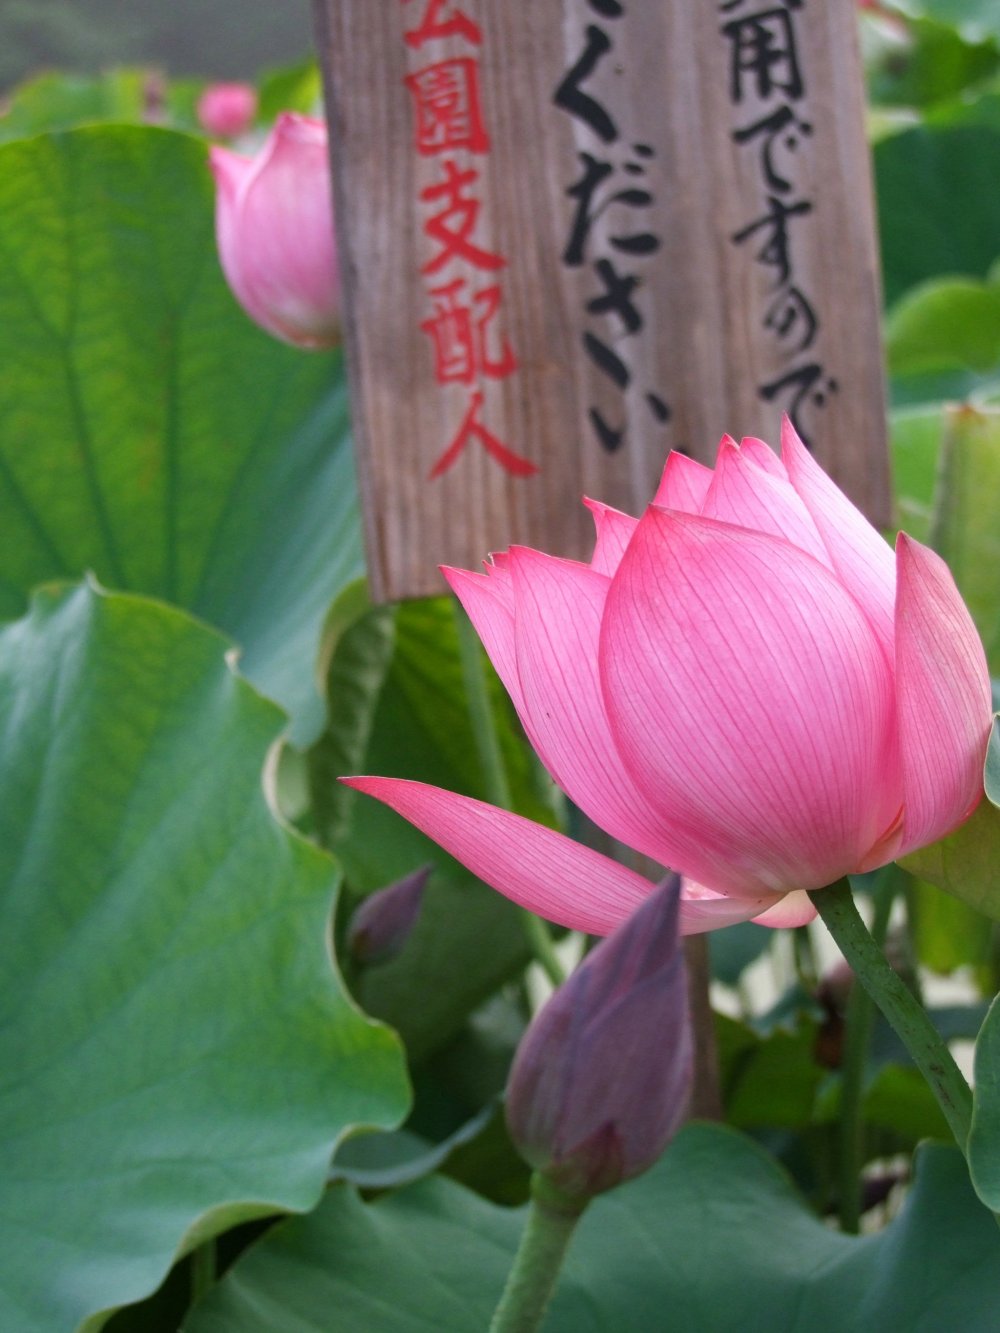 Les panneaux dans l'étang indiquent la variété de lotus